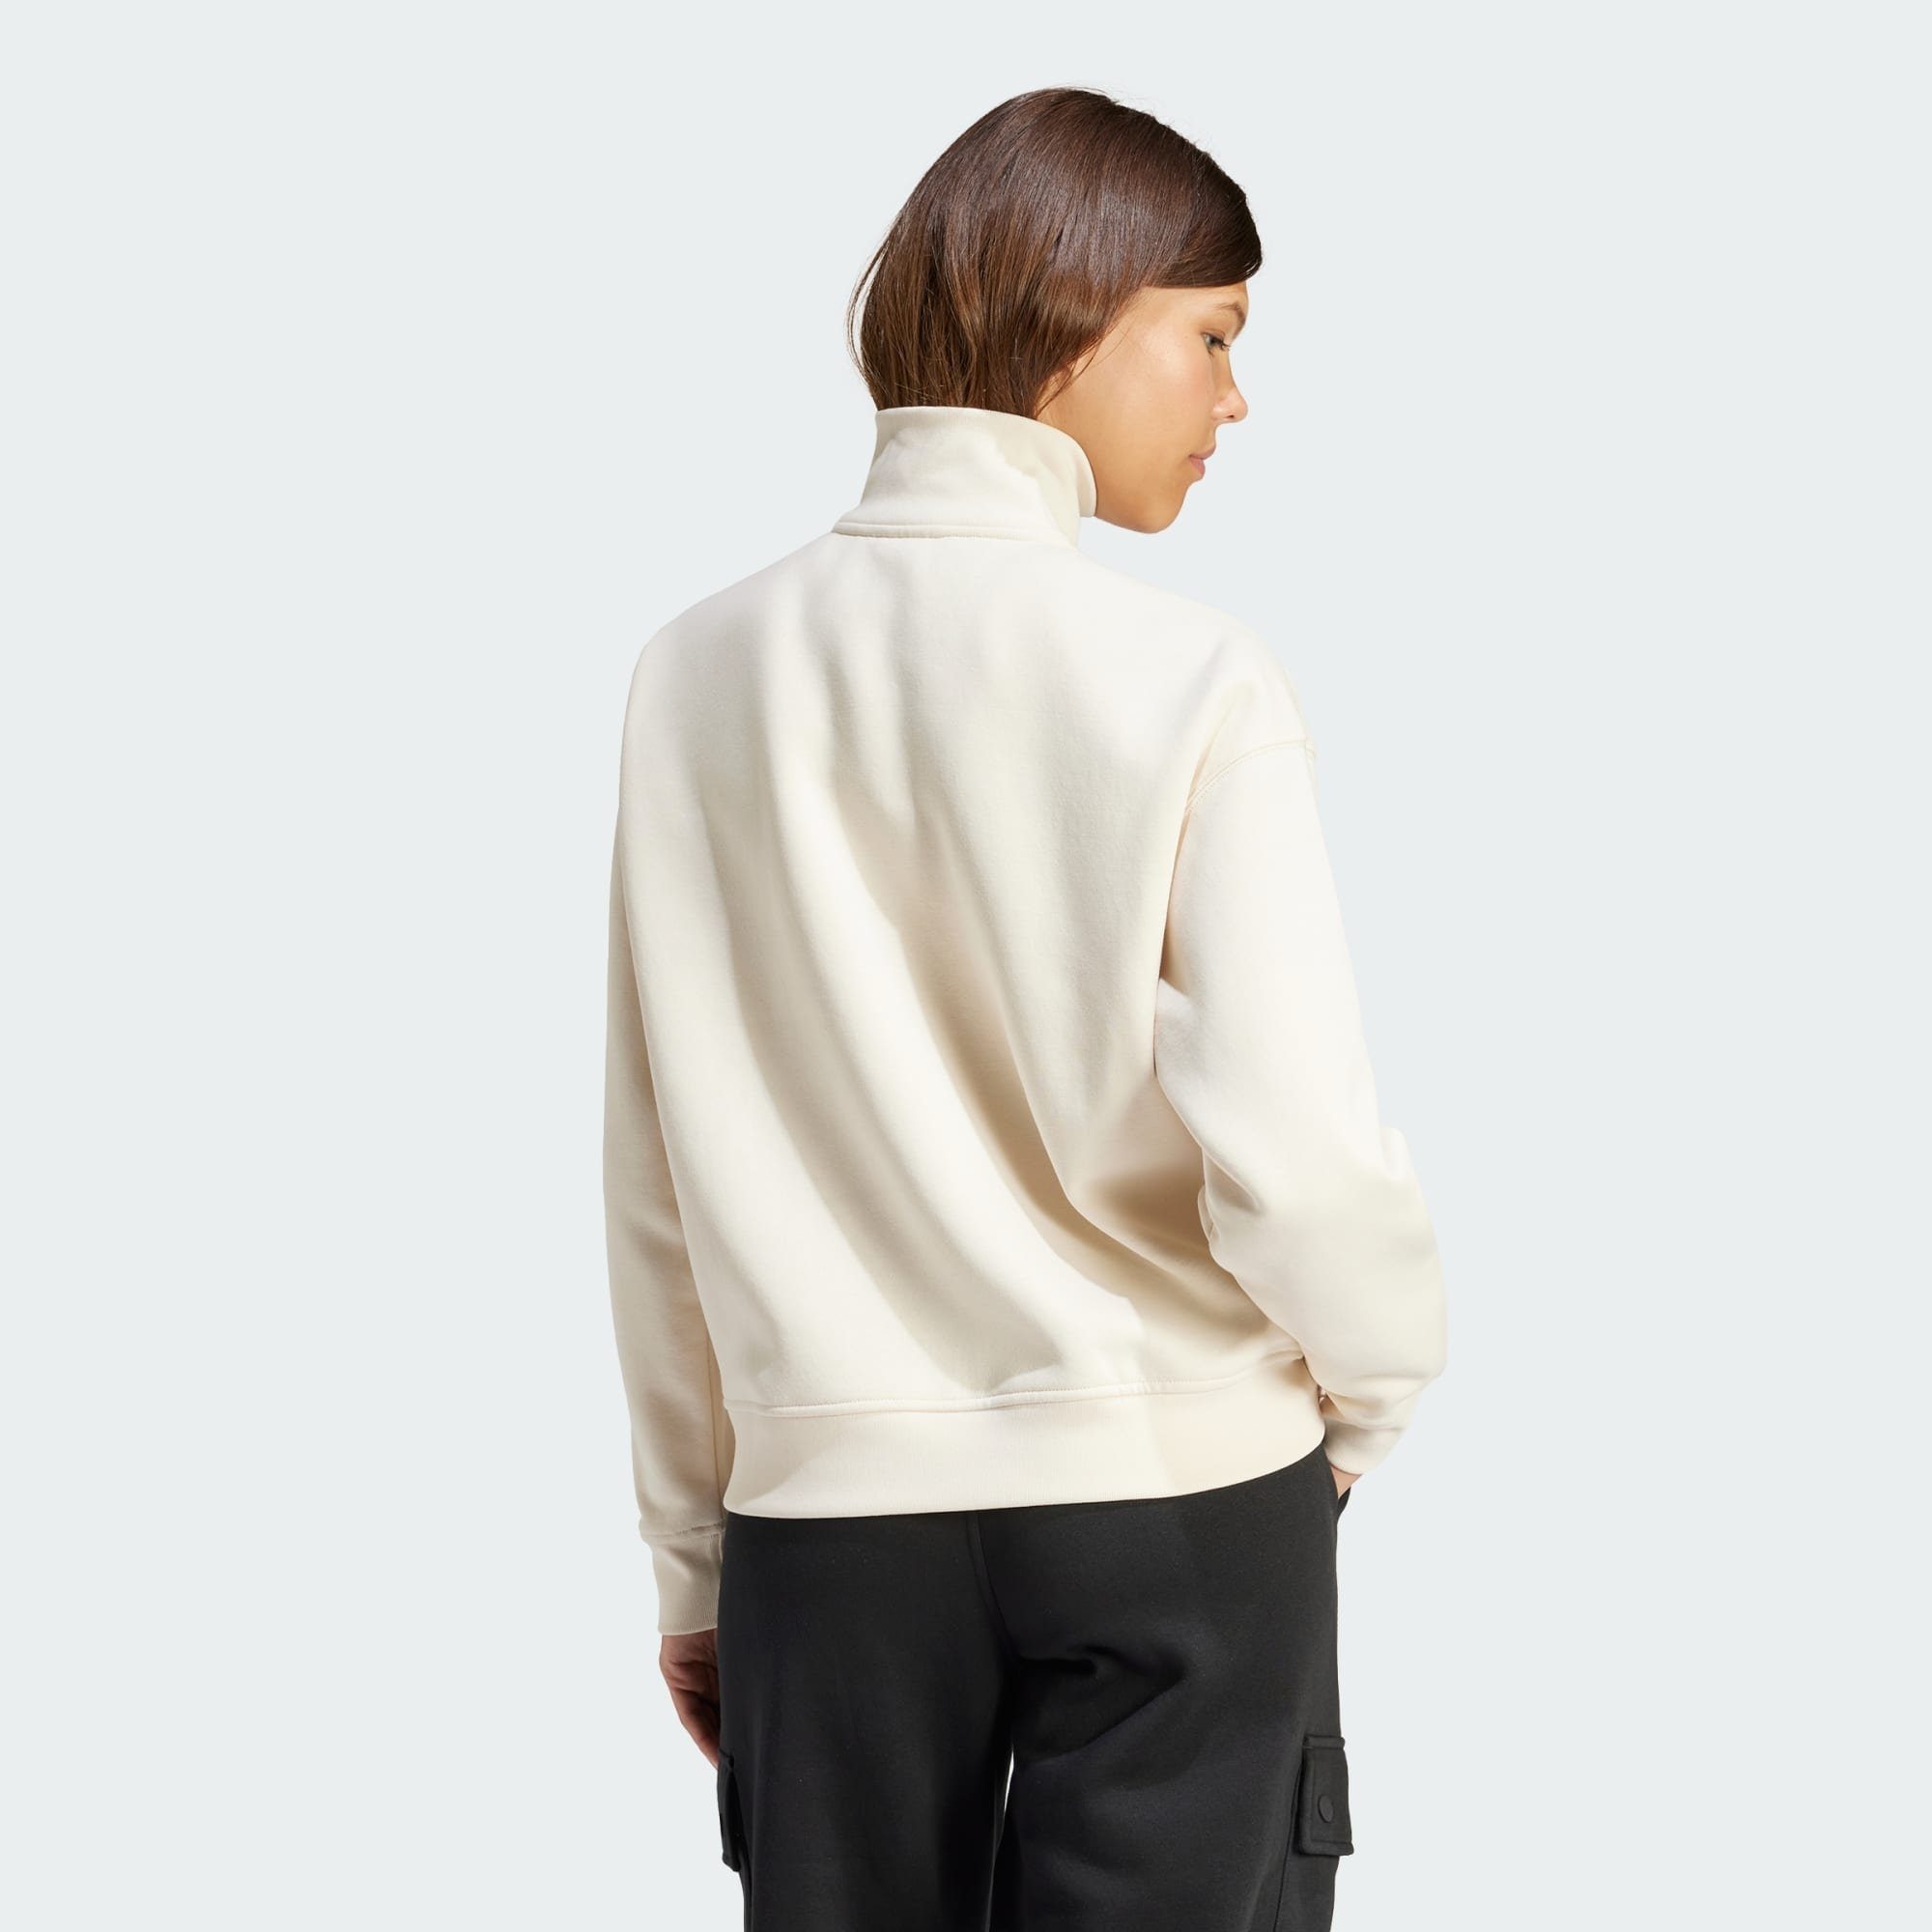 Wonder ZIP ESSENTIALS SWEATSHIRT Originals White 1/2 Sweatshirt adidas